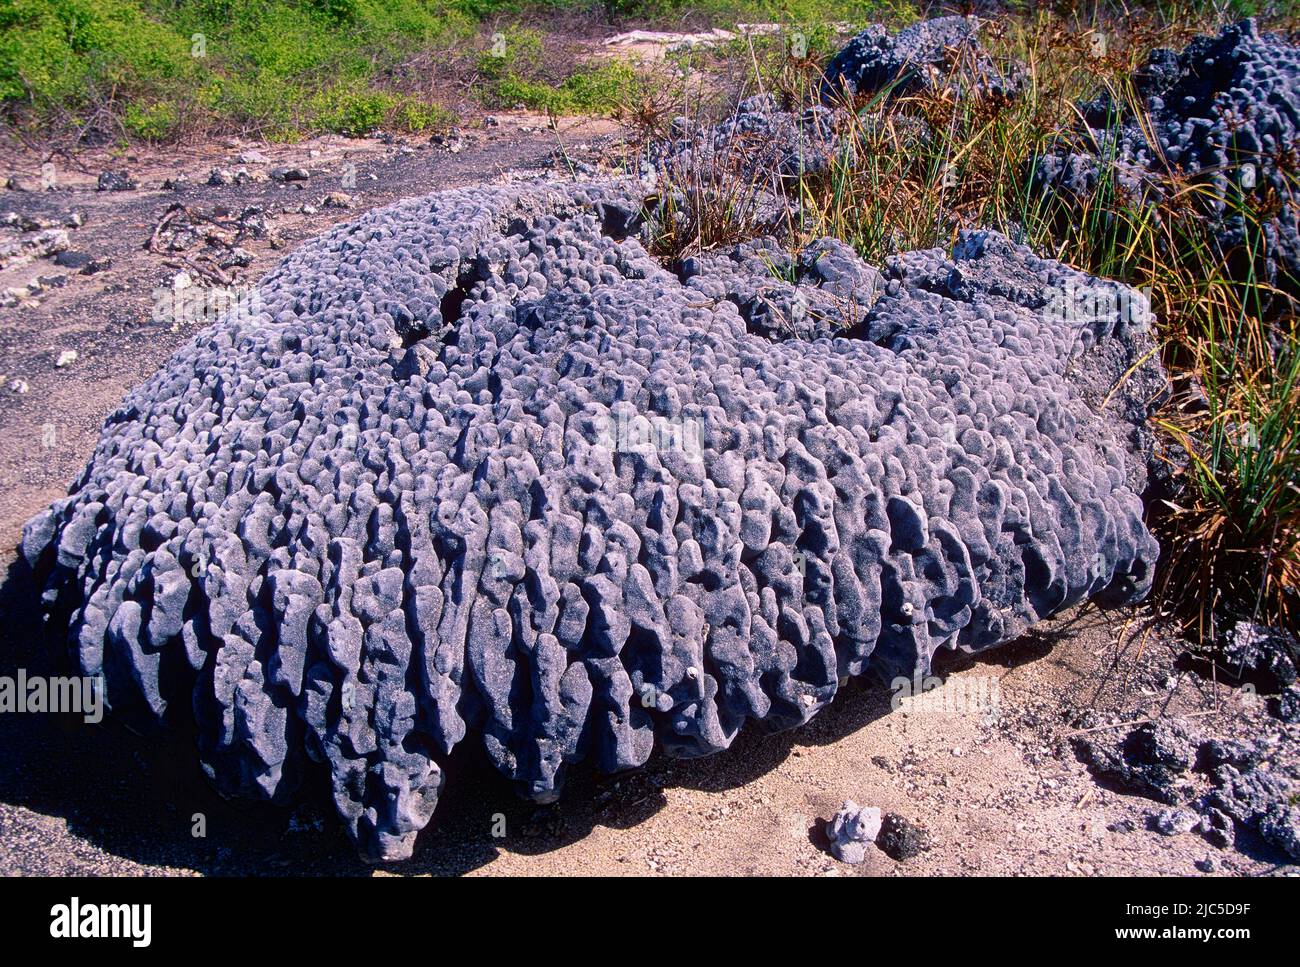 Korallenskelett, Inland, freigelegt durch schnelle Bodenerhöhung durch vulkanische Aktivität, Galapagos Stock Photo